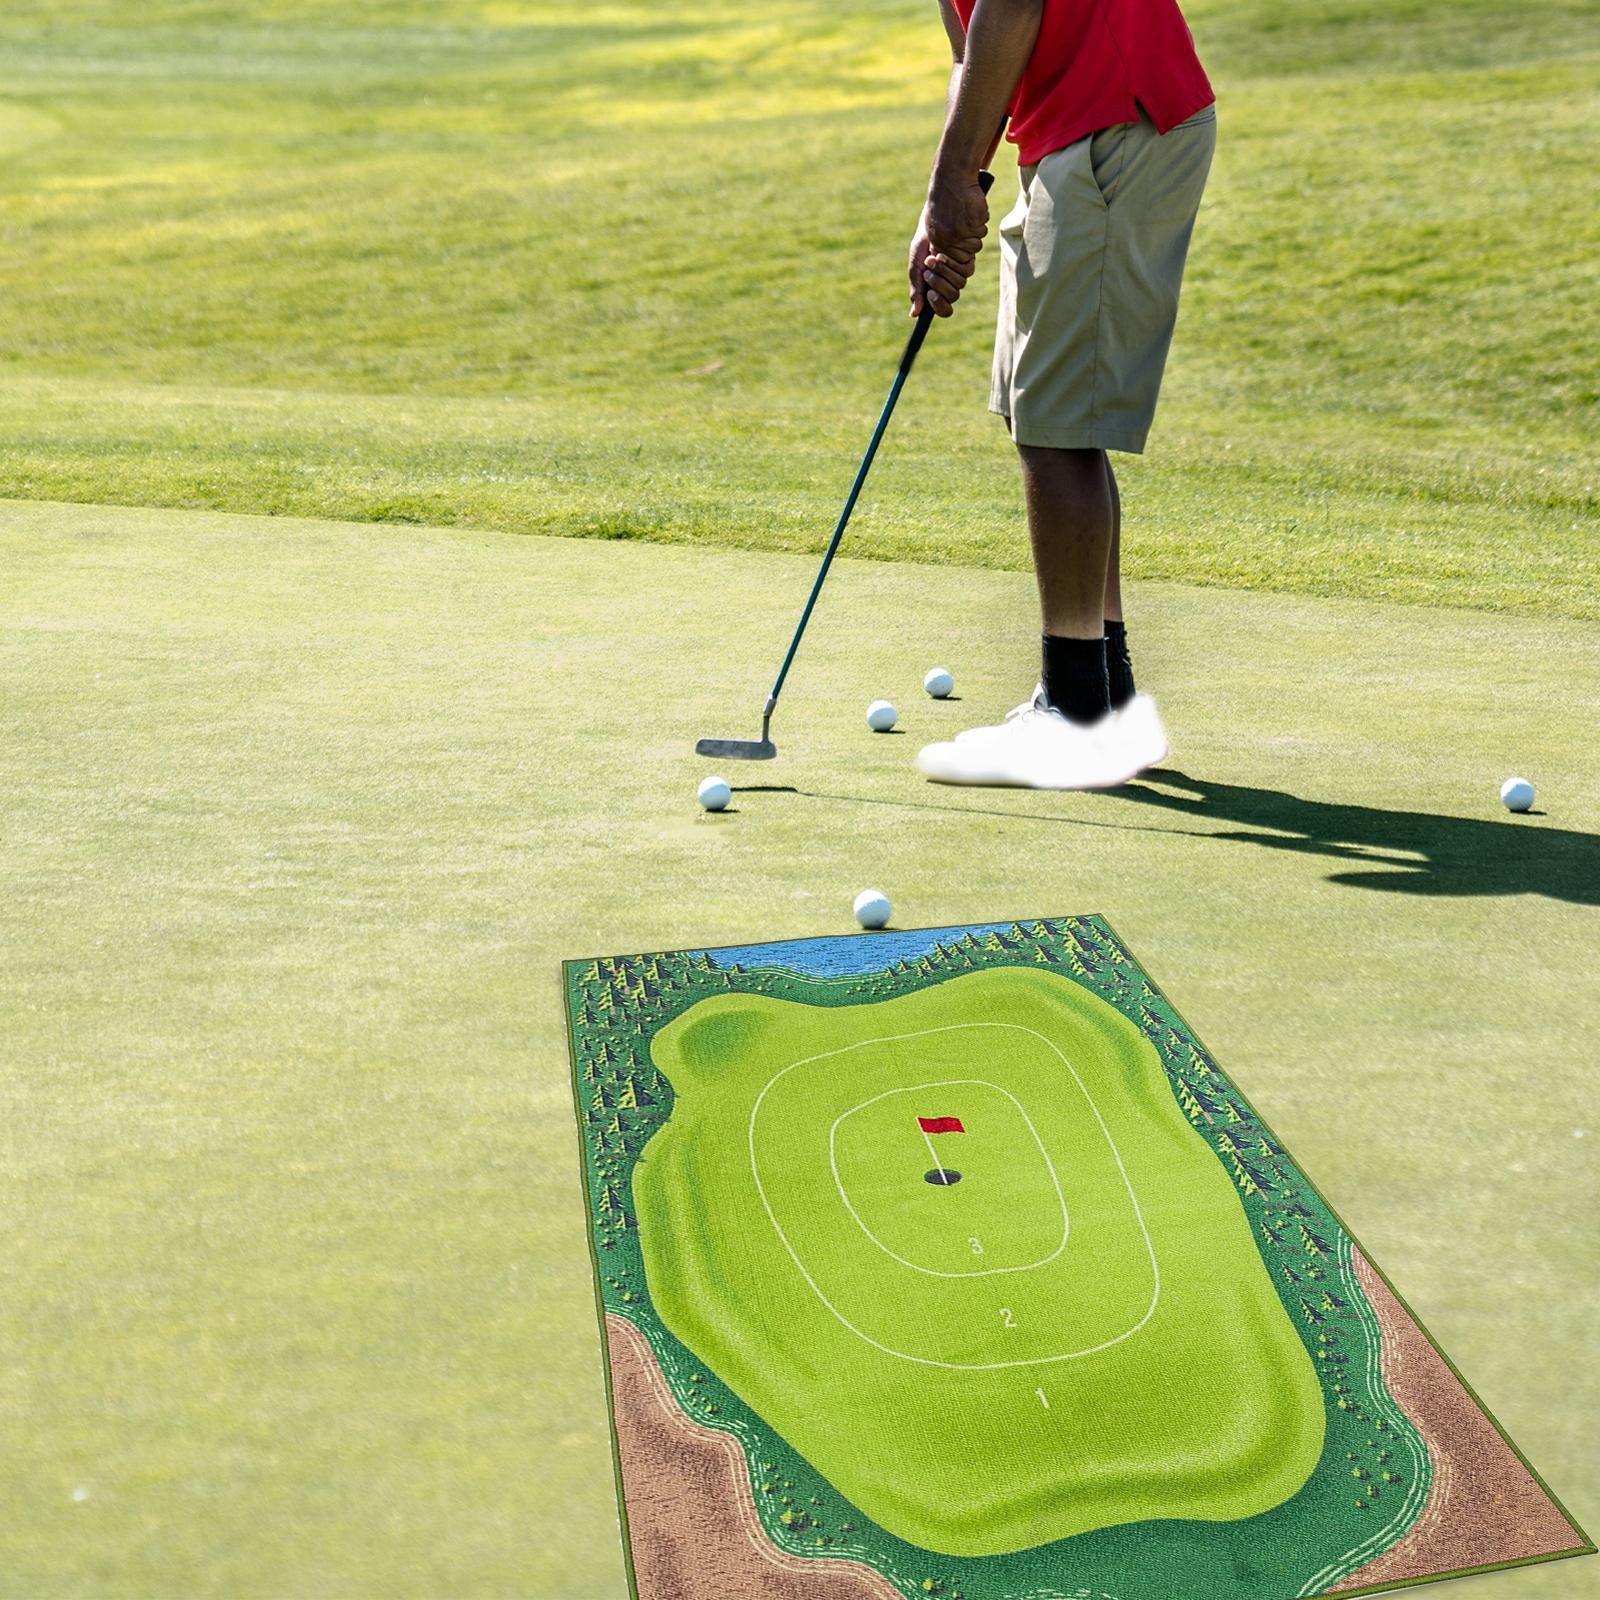 Chipping Golf Game Mat Golf Practice Mats and Sticky Balls Golf Hitting Mat